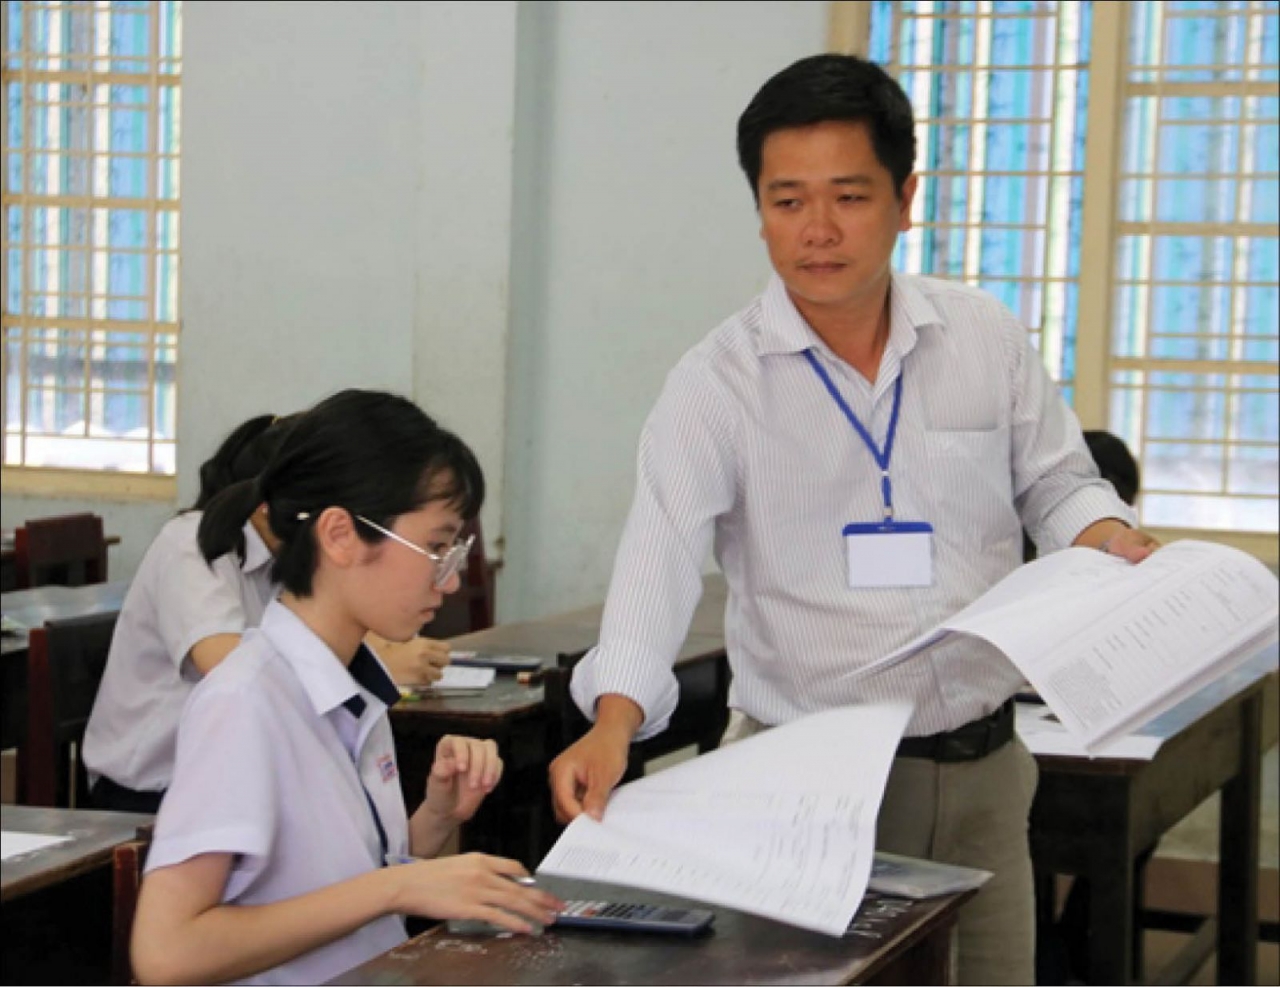 Chỉ tiêu tuyển sinh Phân hiệu Đại học Thái Nguyên tại Lào Cai - trường Đại học Thái Nguyên năm 2019